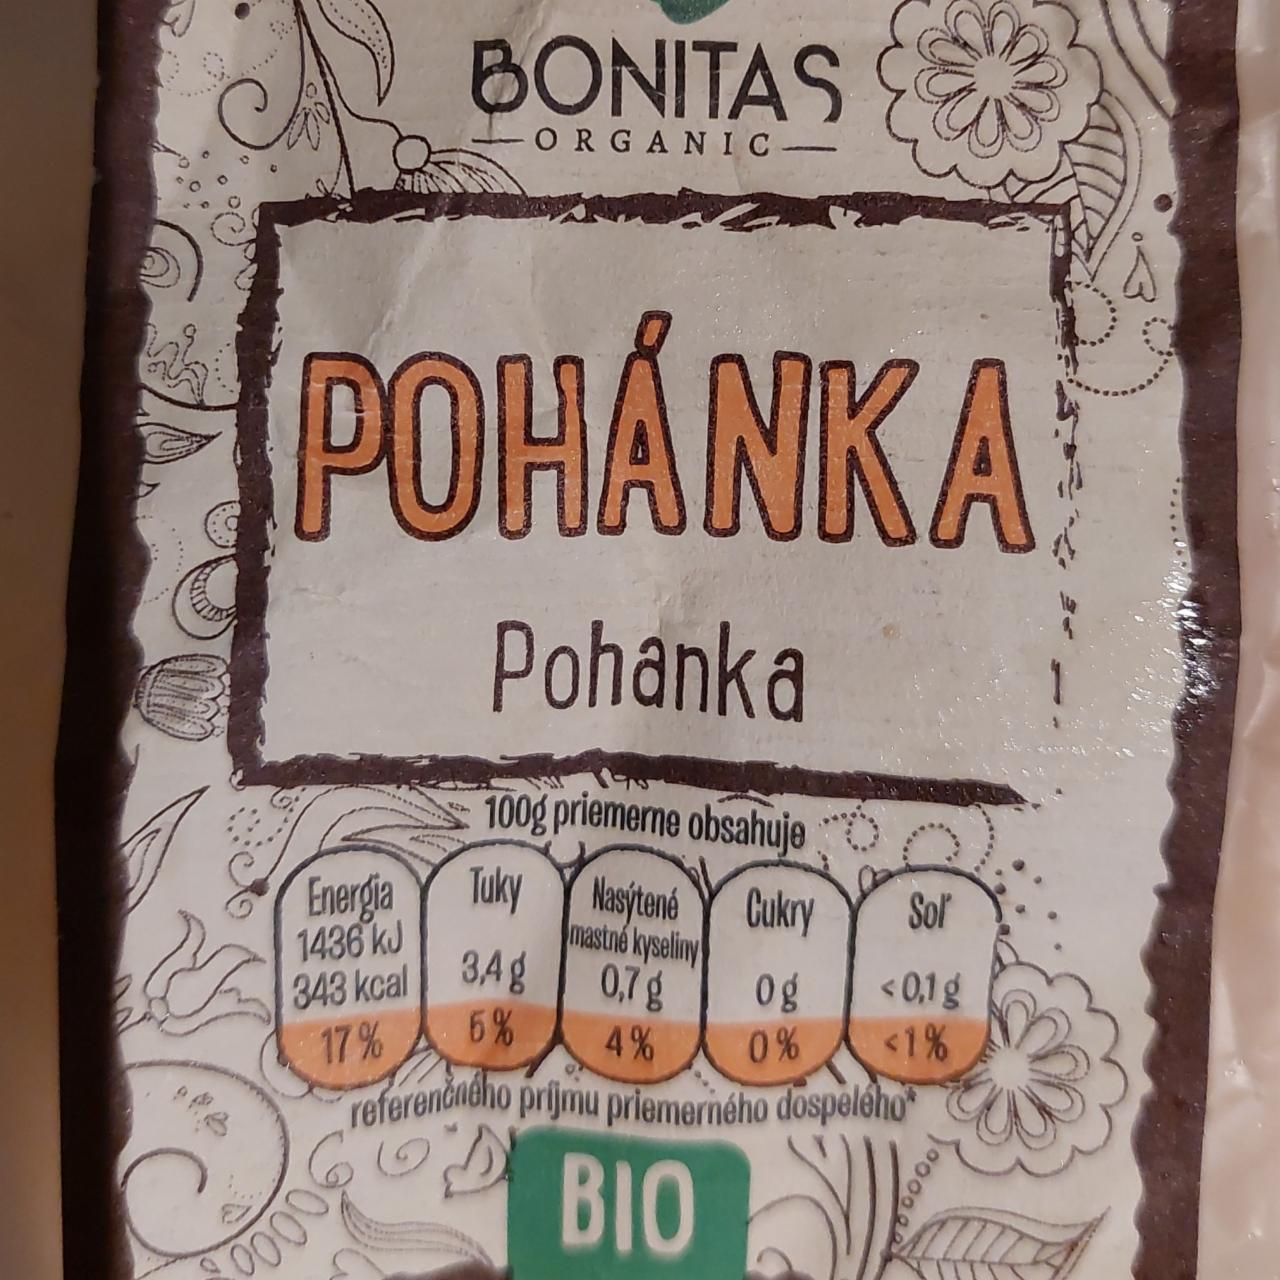 Fotografie - Bio Pohanka Bonitas organic